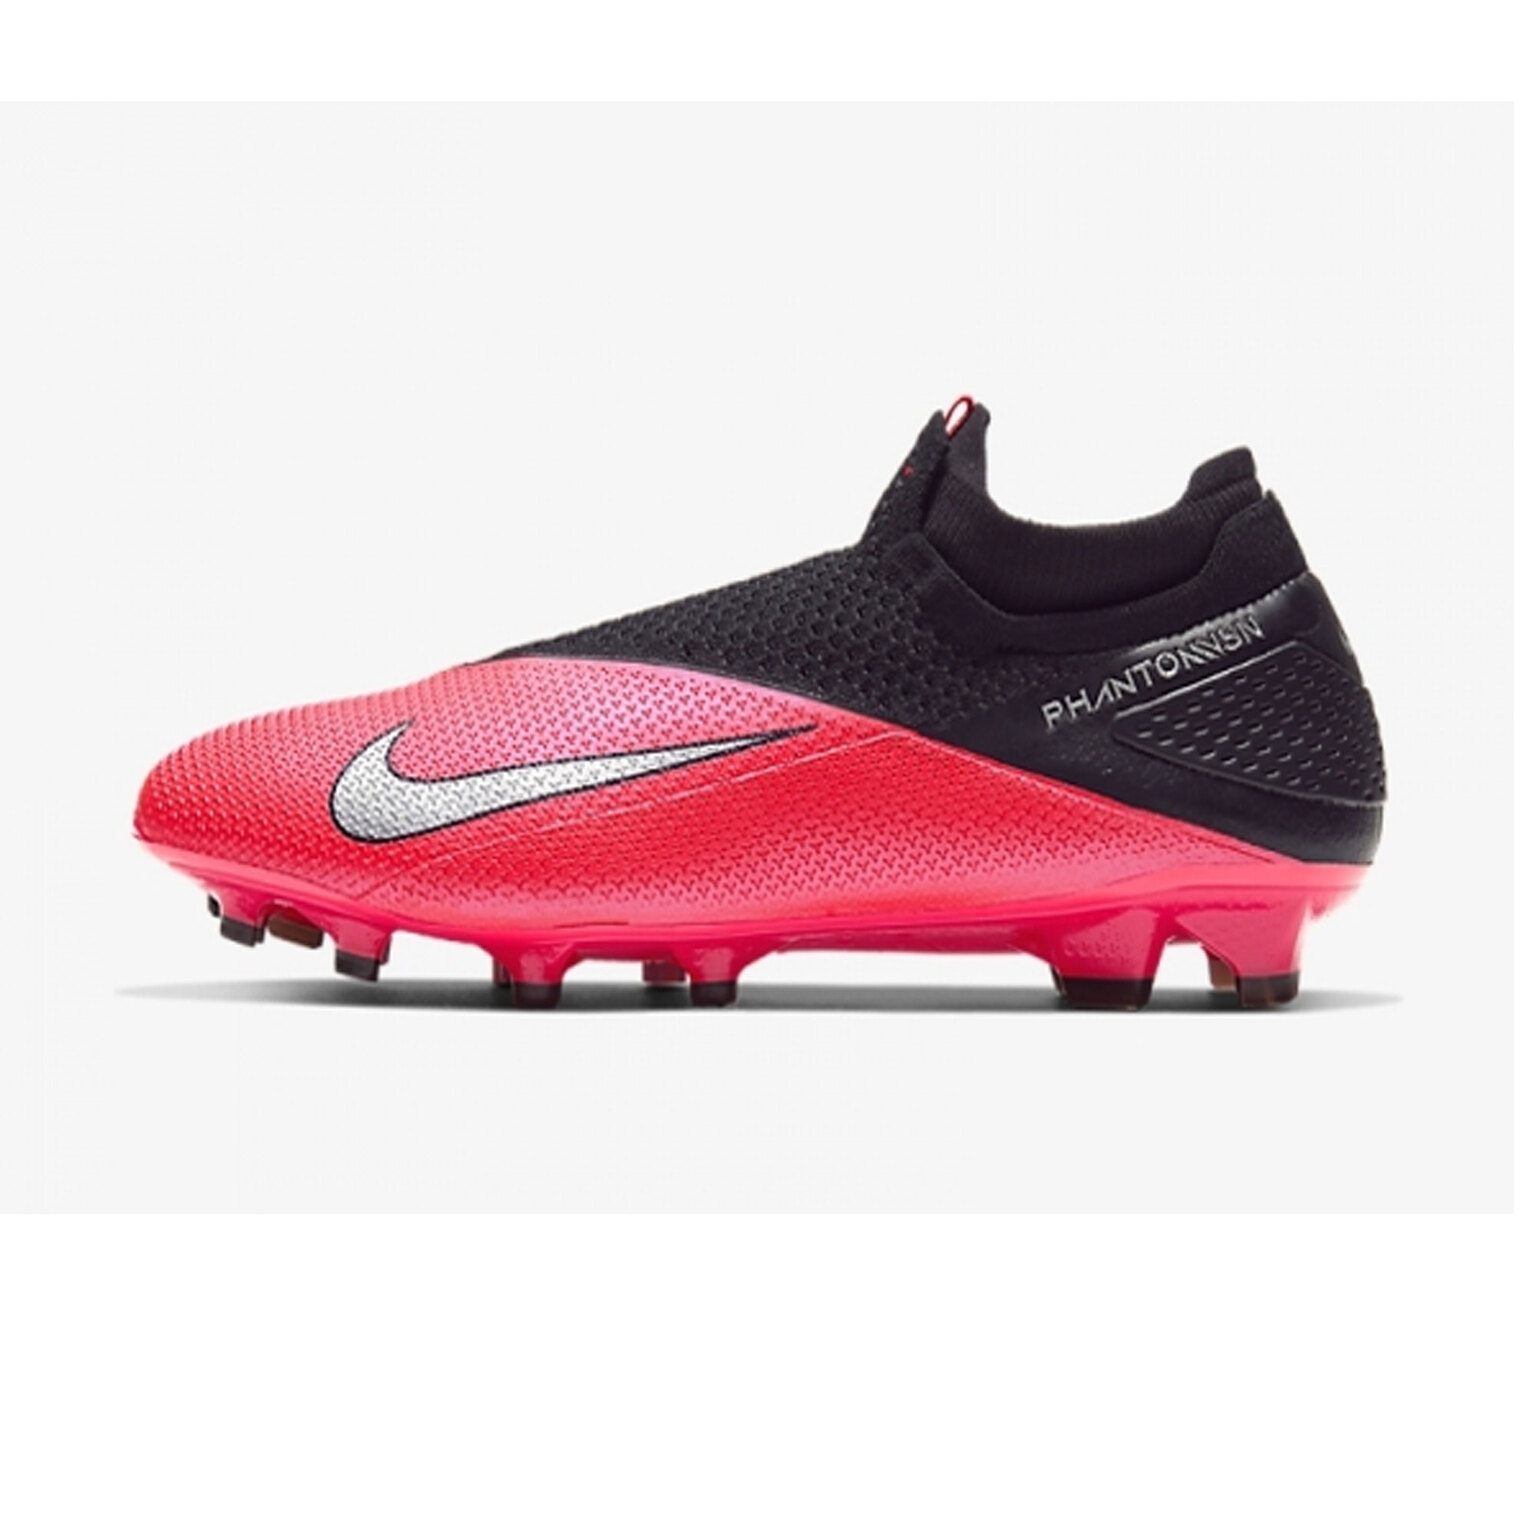 Бутсы Nike Phantom Vision 2 Elite DF FG CD4161-606 – купить бутсы в  интернет магазине Footballstore, цена, фото, отзывы